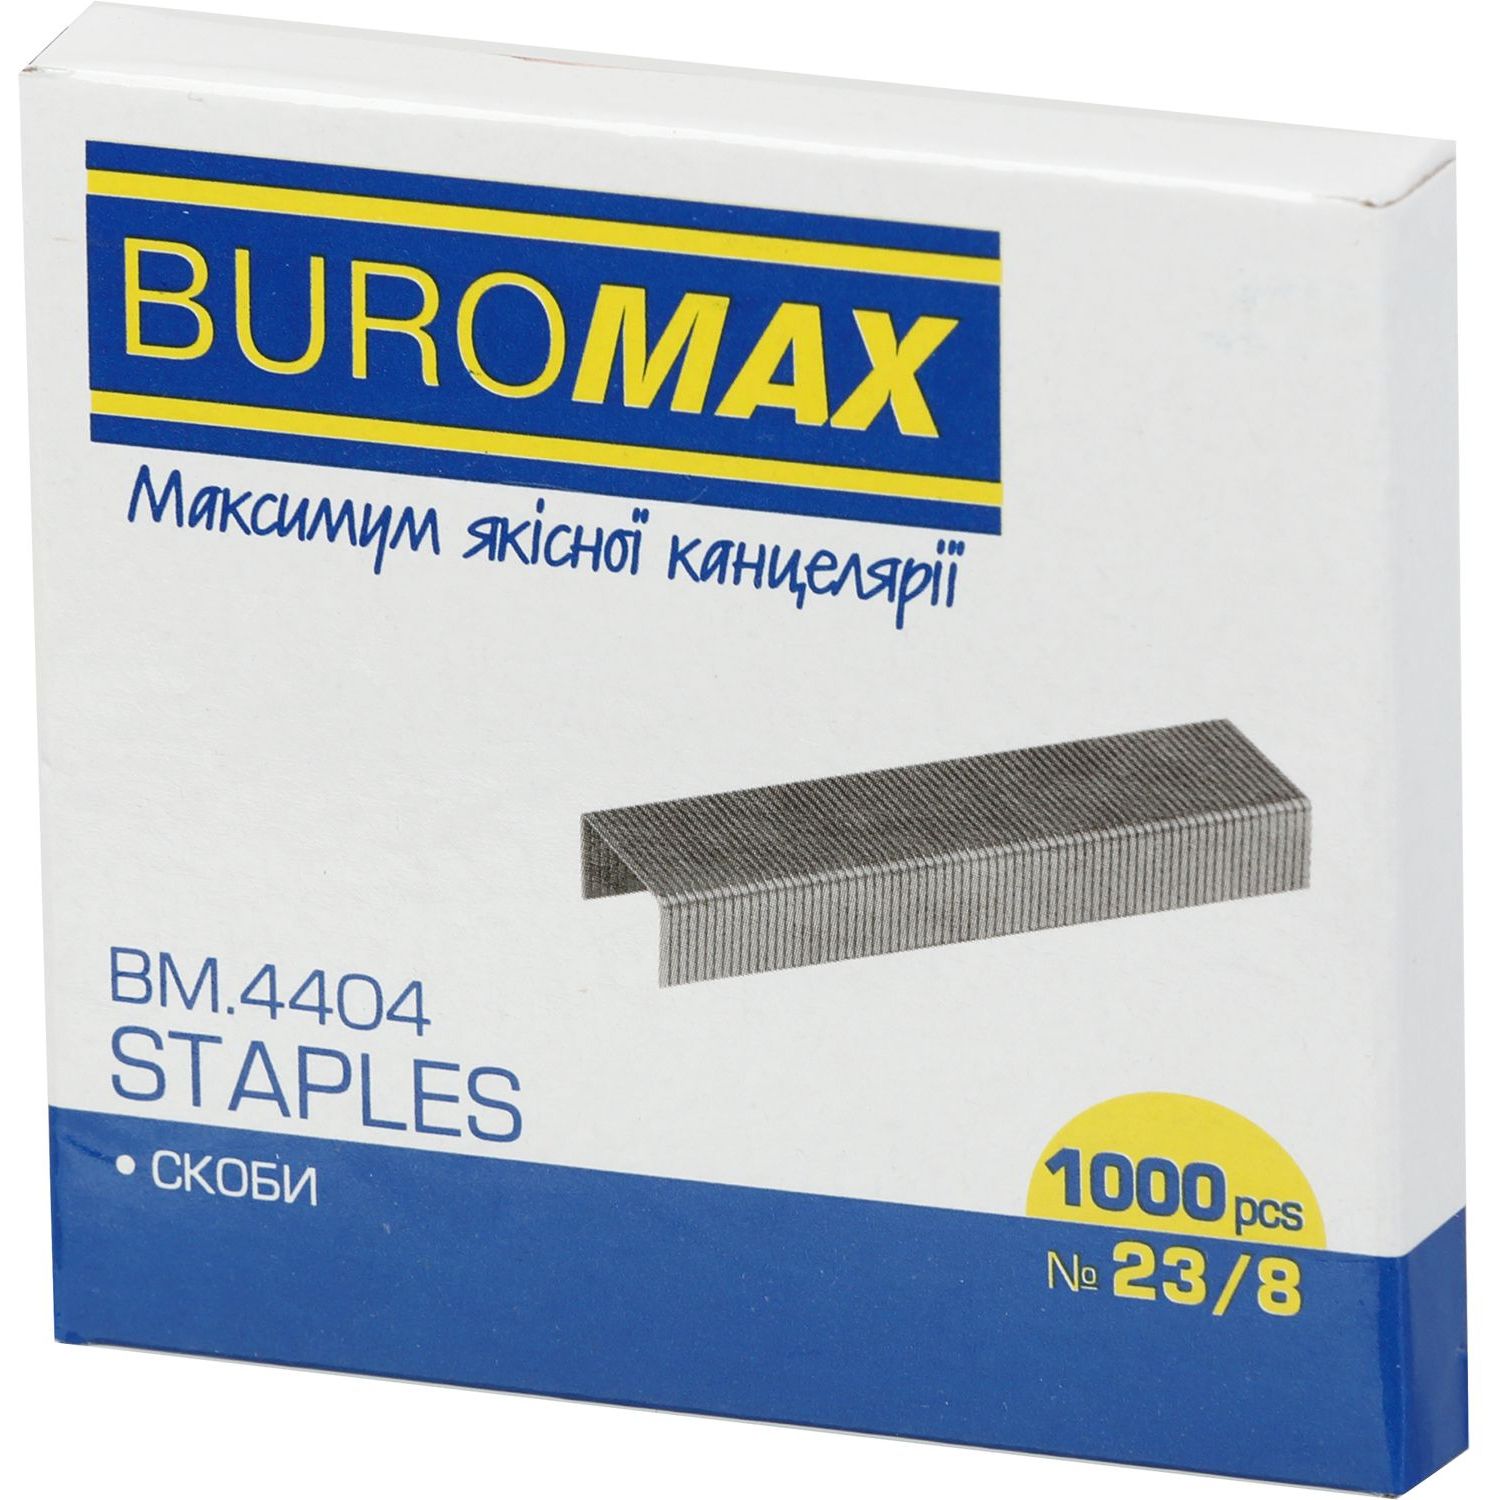 Скобы для степлеров Buromax Люкс №23/8 1000 шт. (BM.4404) - фото 1